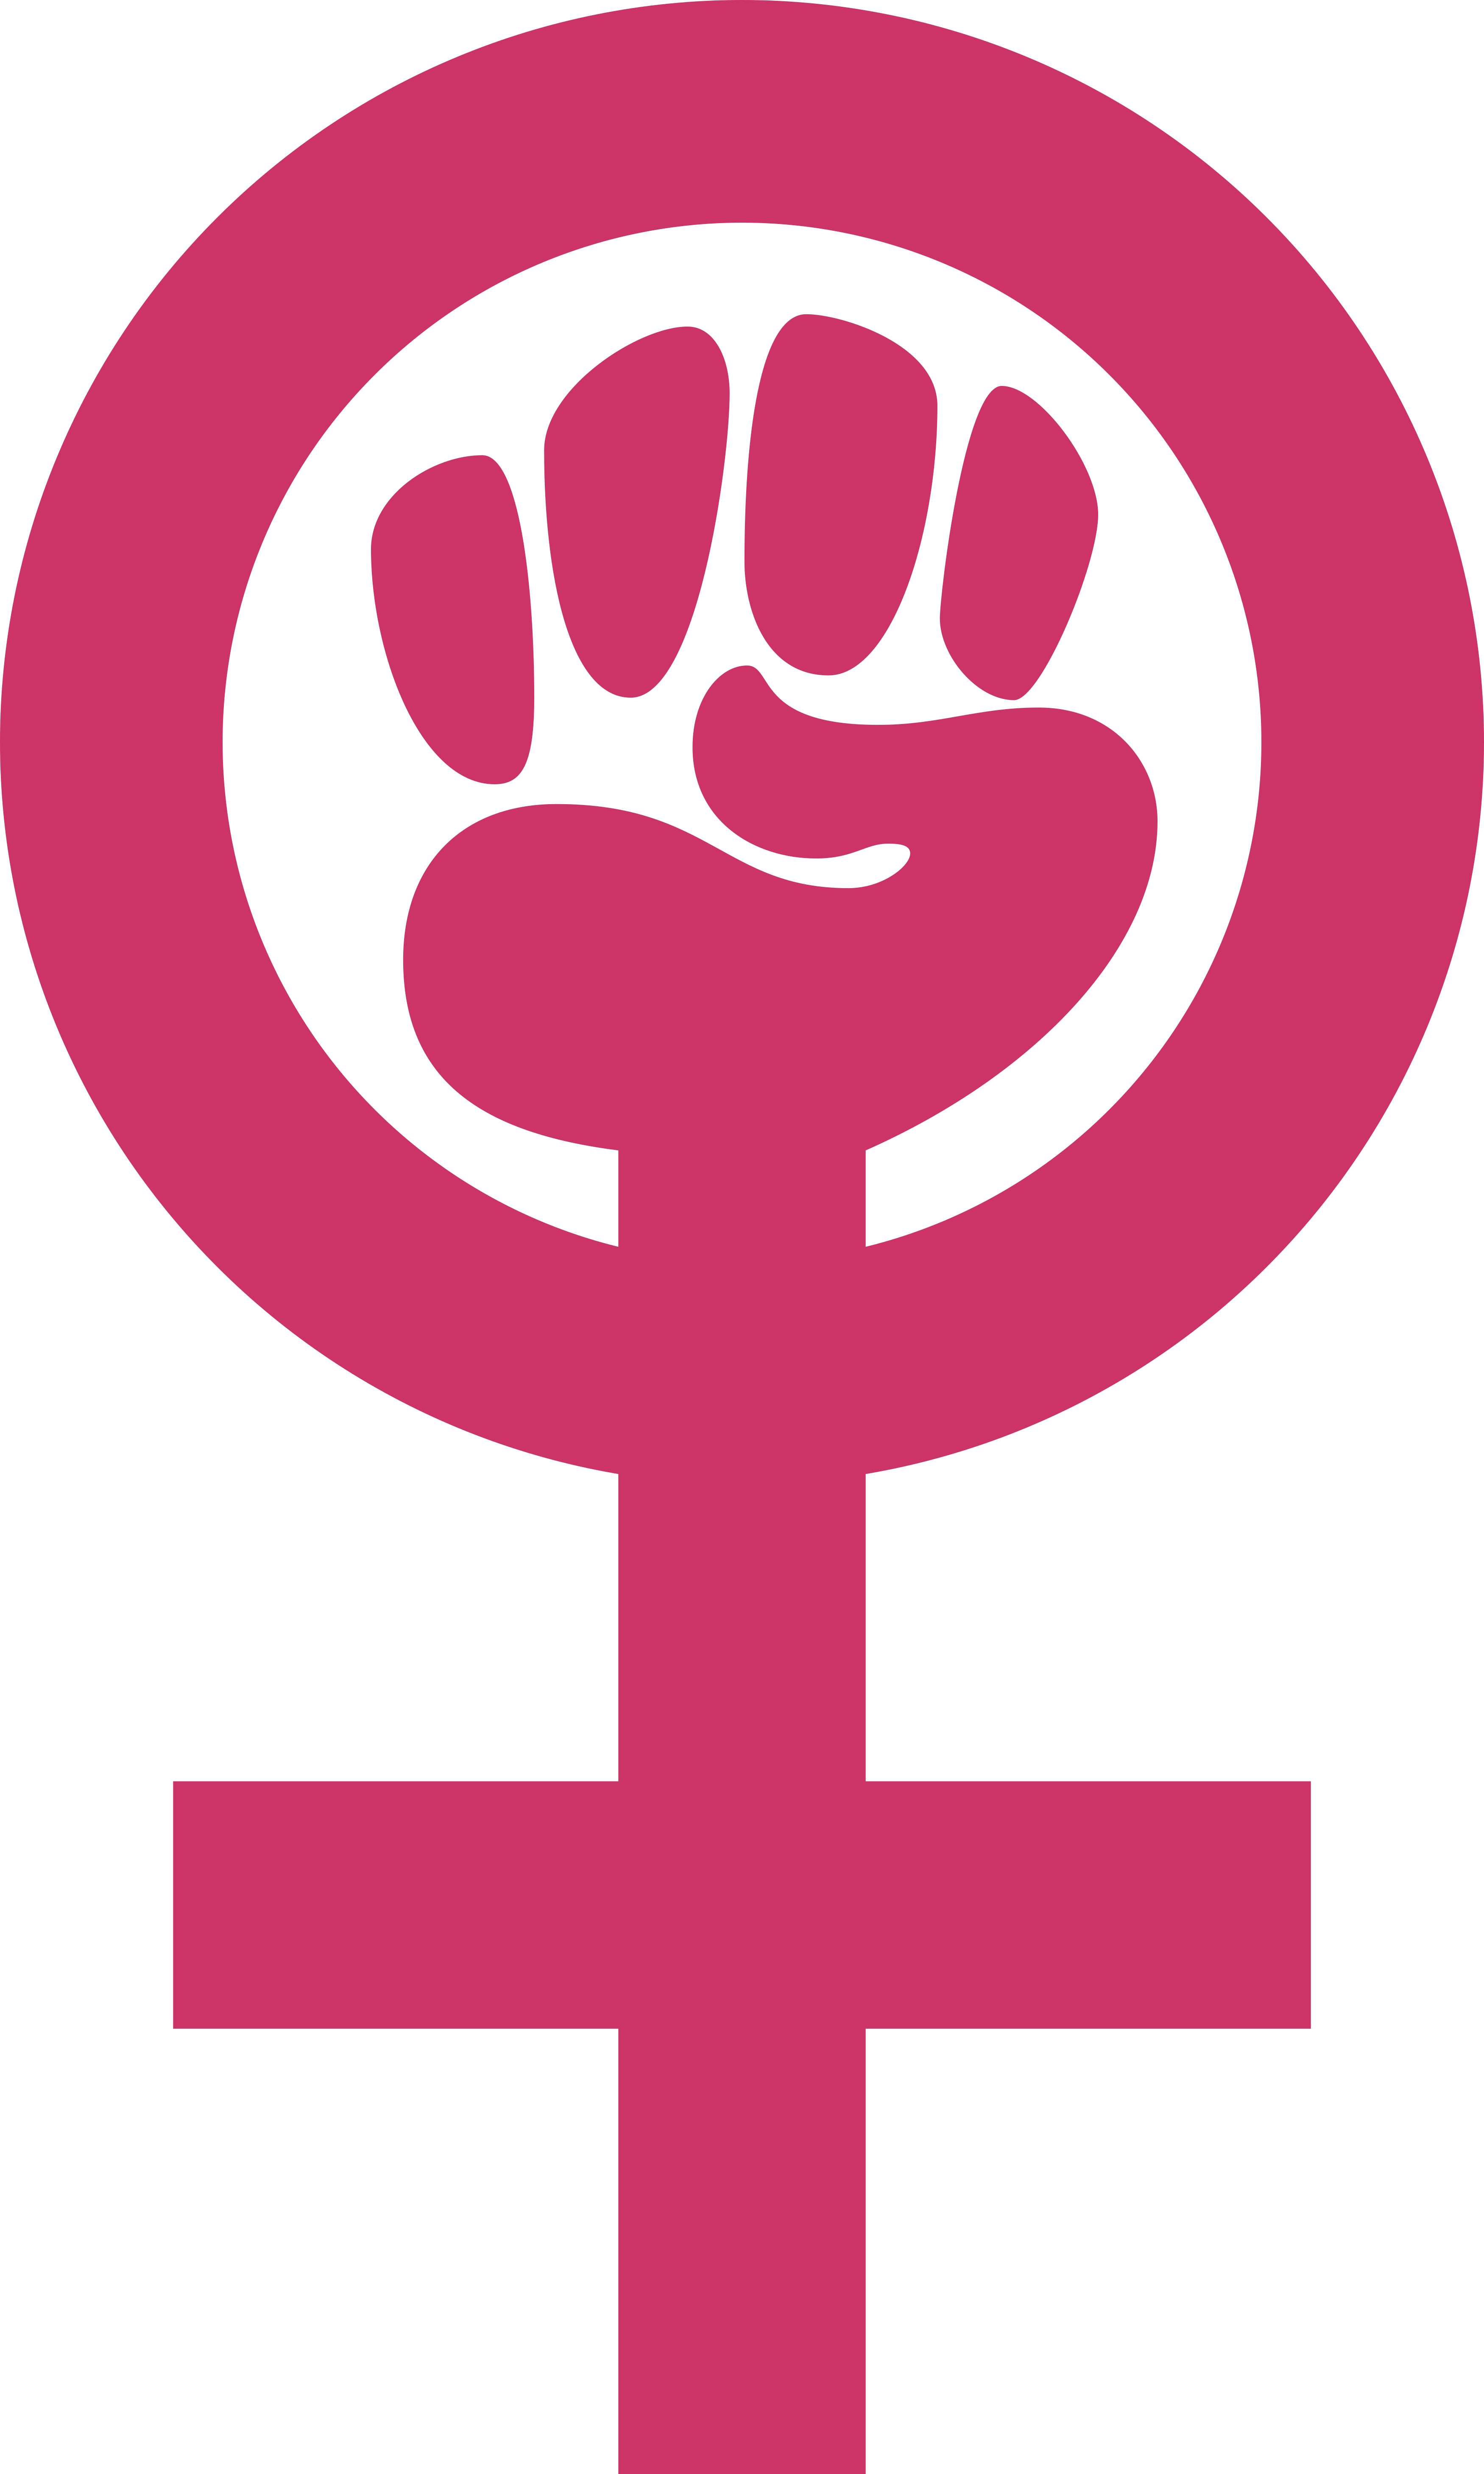 Símbolo do Feminismo.